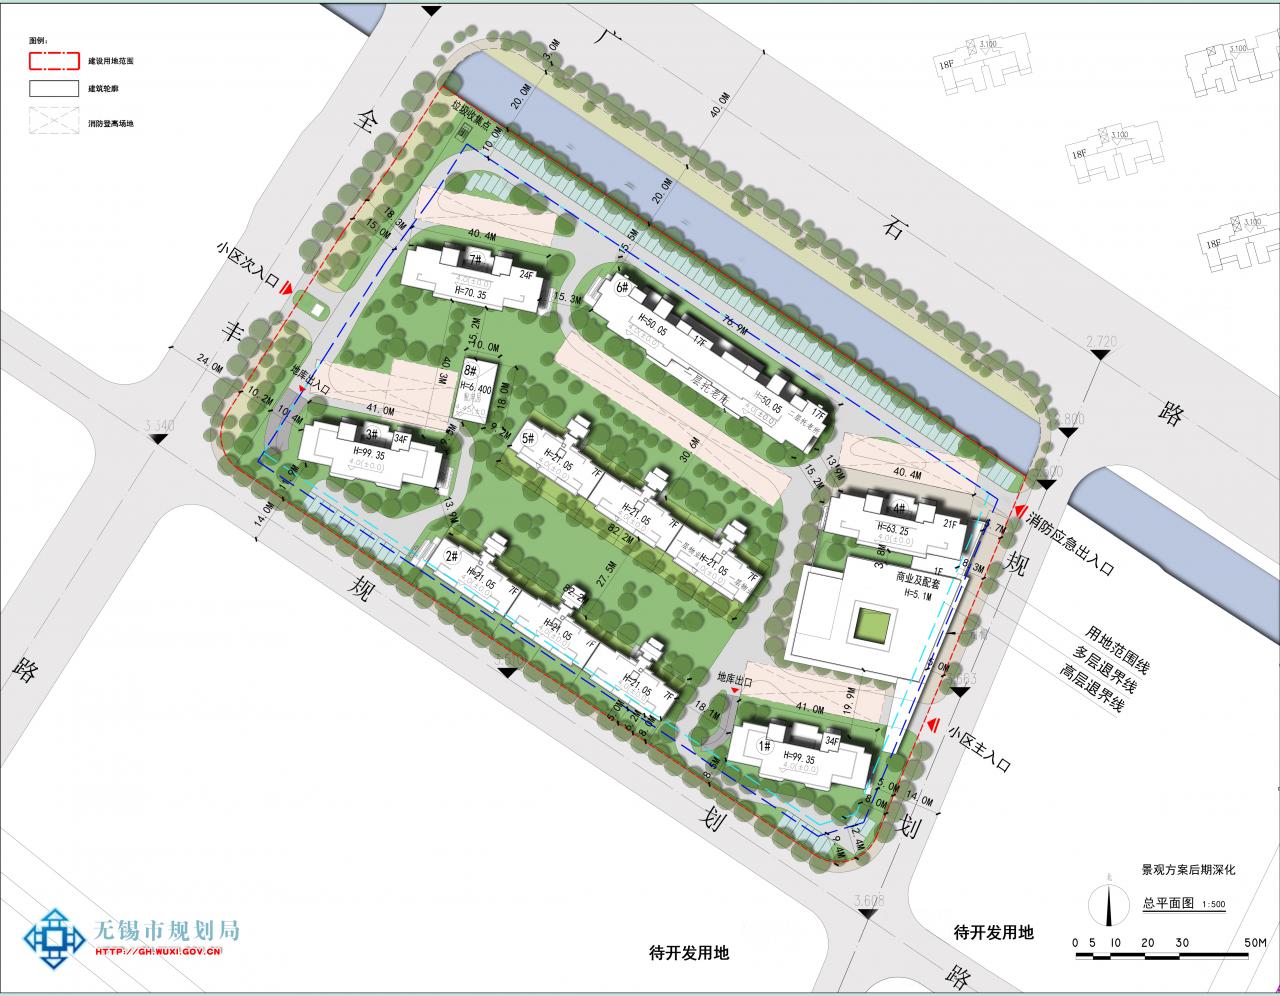 XDG-2014-45号地块开发建设项目规划设计方案批前公示